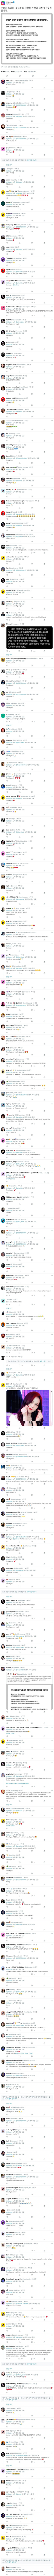 JTBC 설강화 트윗에 외국 블핑, 지수팬들 반응 | 인스티즈